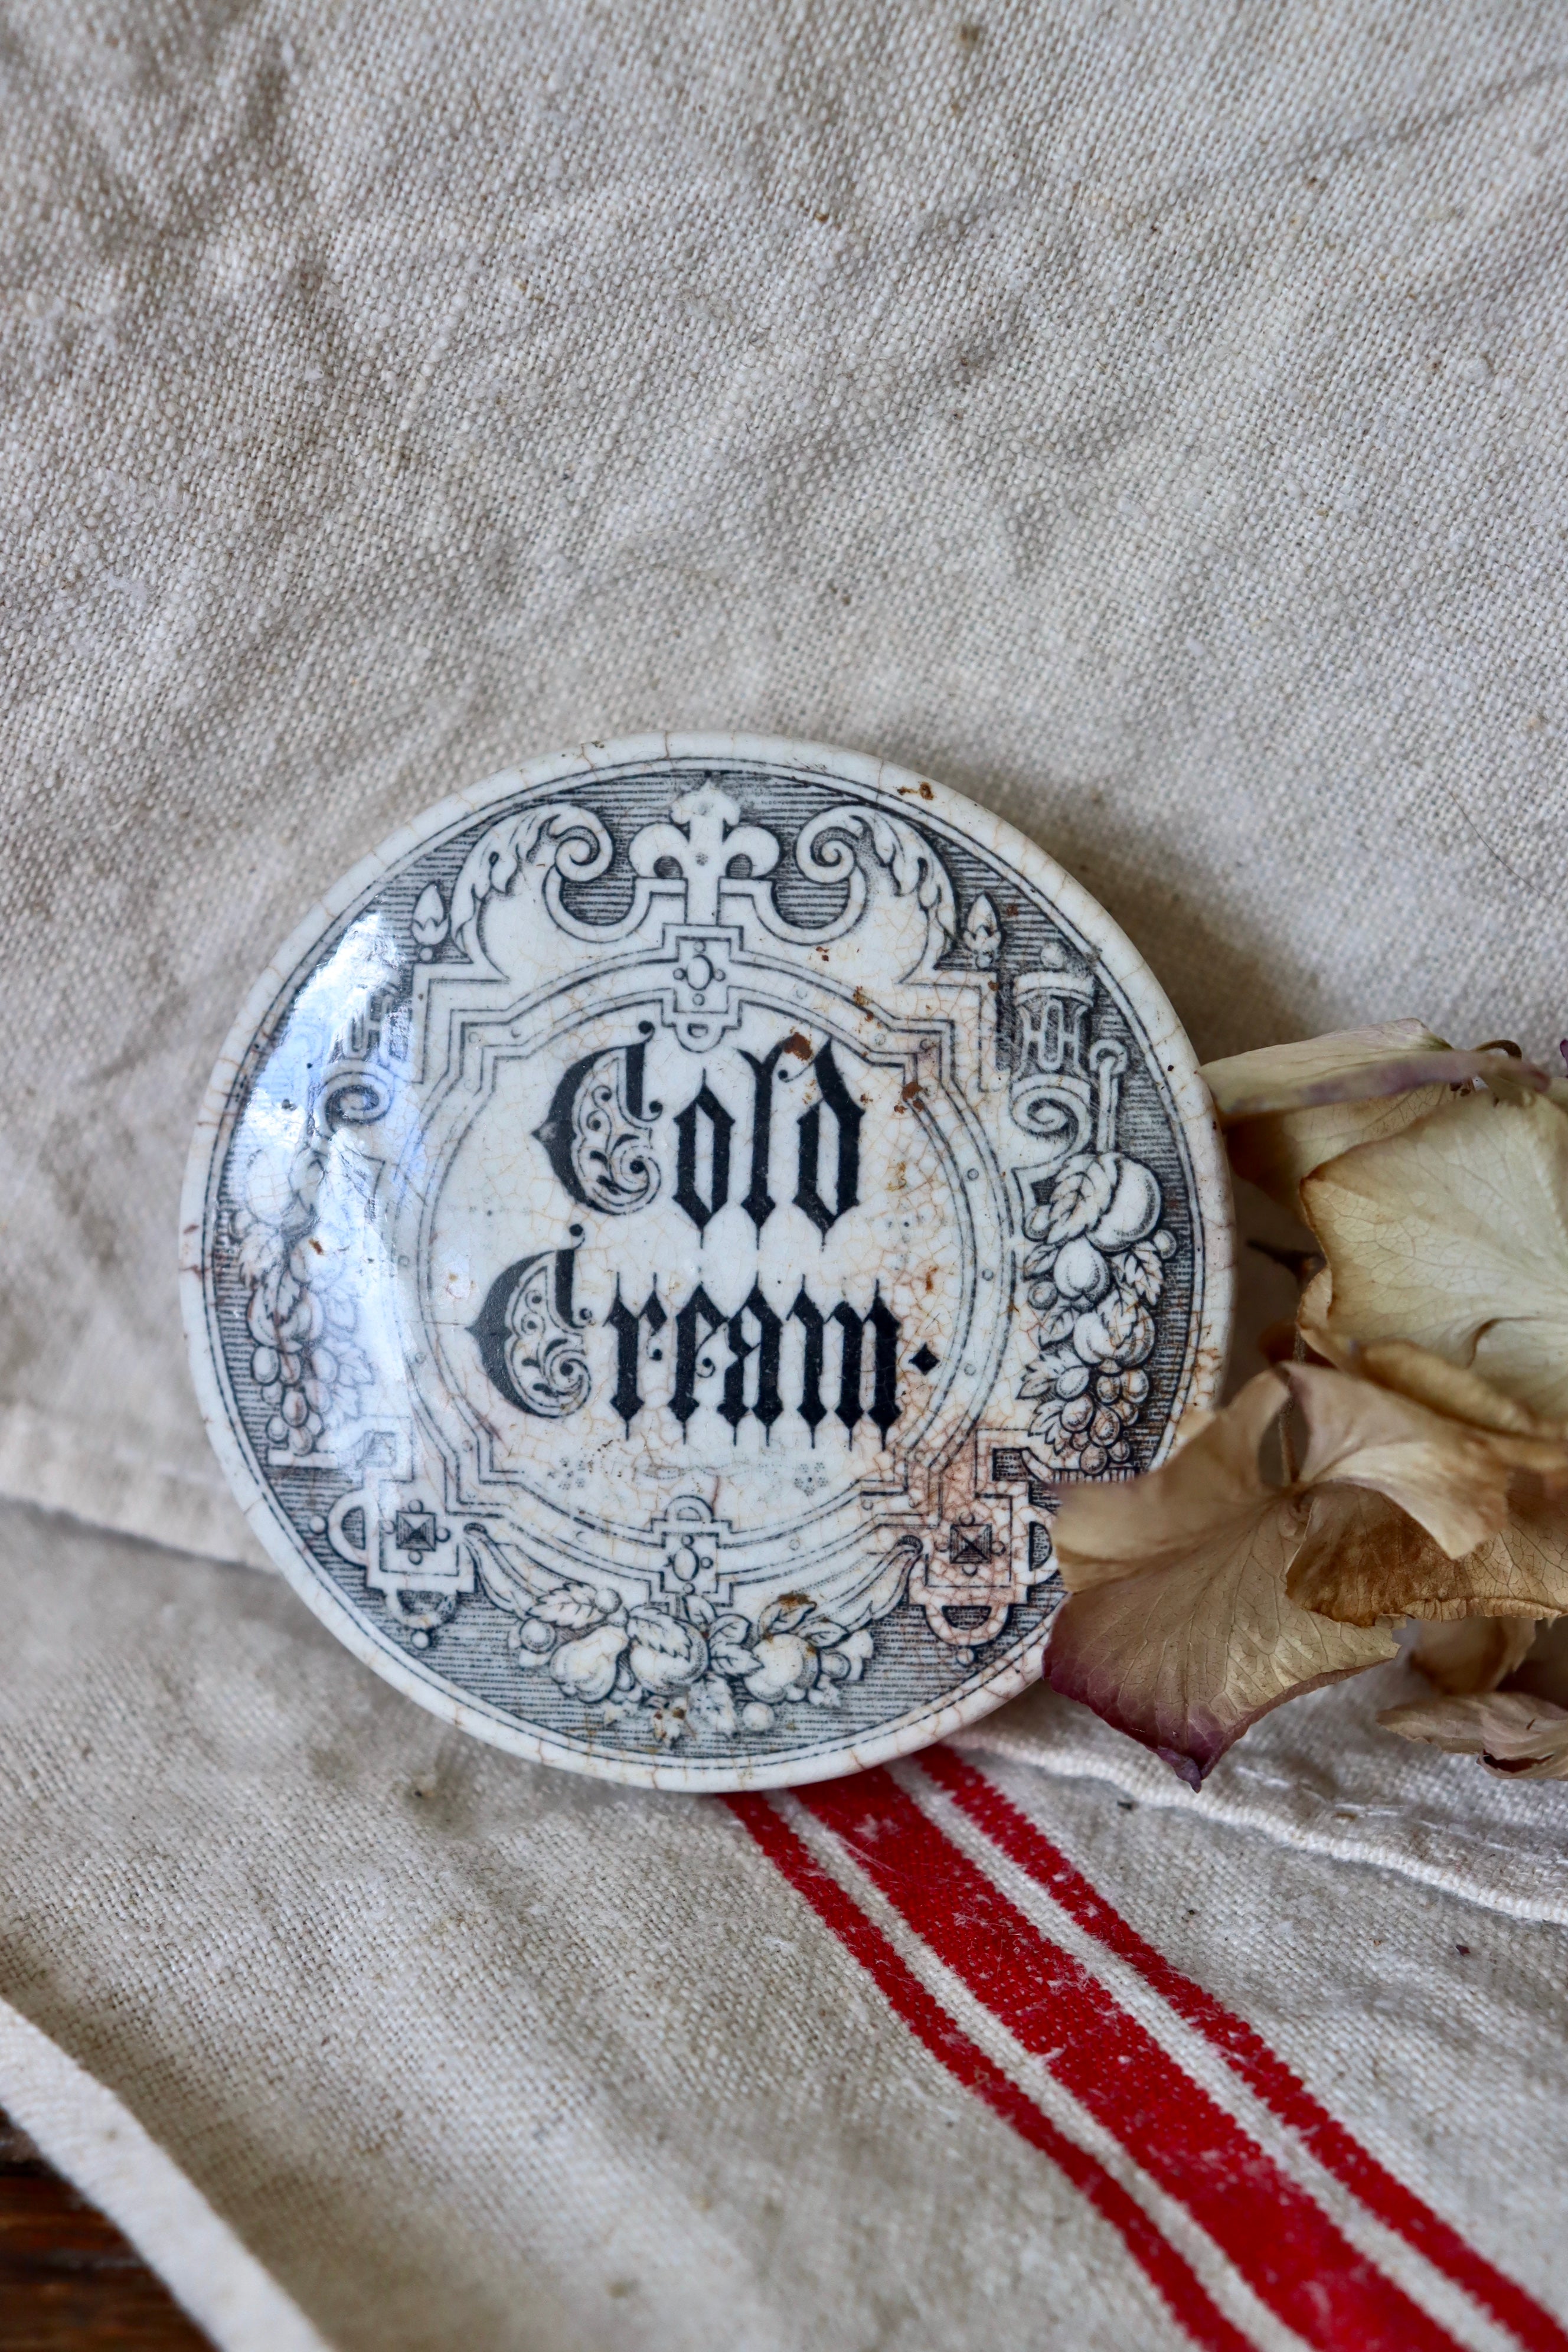 Antique Cold Cream Pot Lid